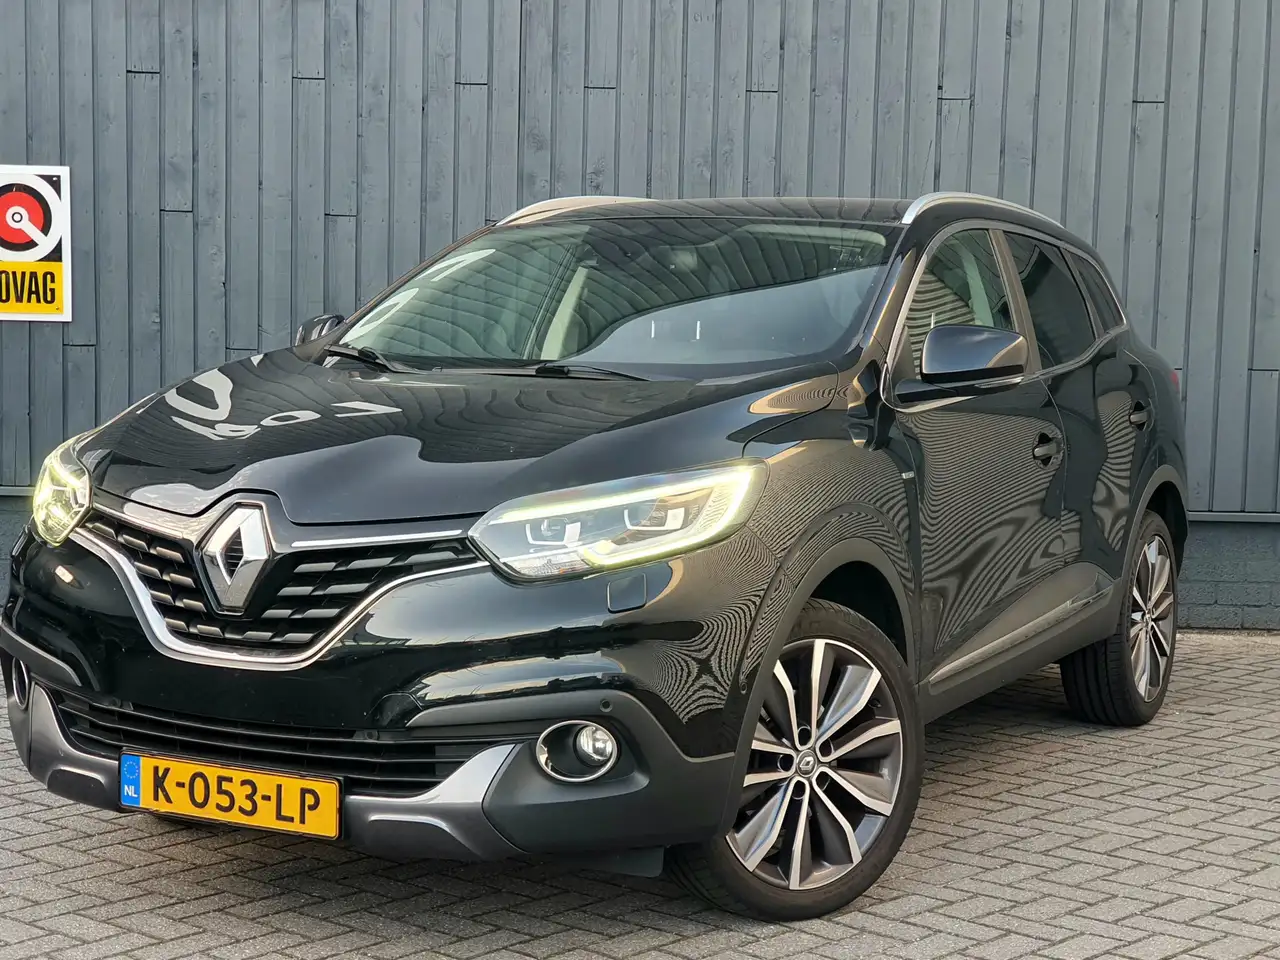 Renault Kadjar SUV/4x4/Pick-up in Zwart tweedehands in EINDHOVEN voor € 15.998,-